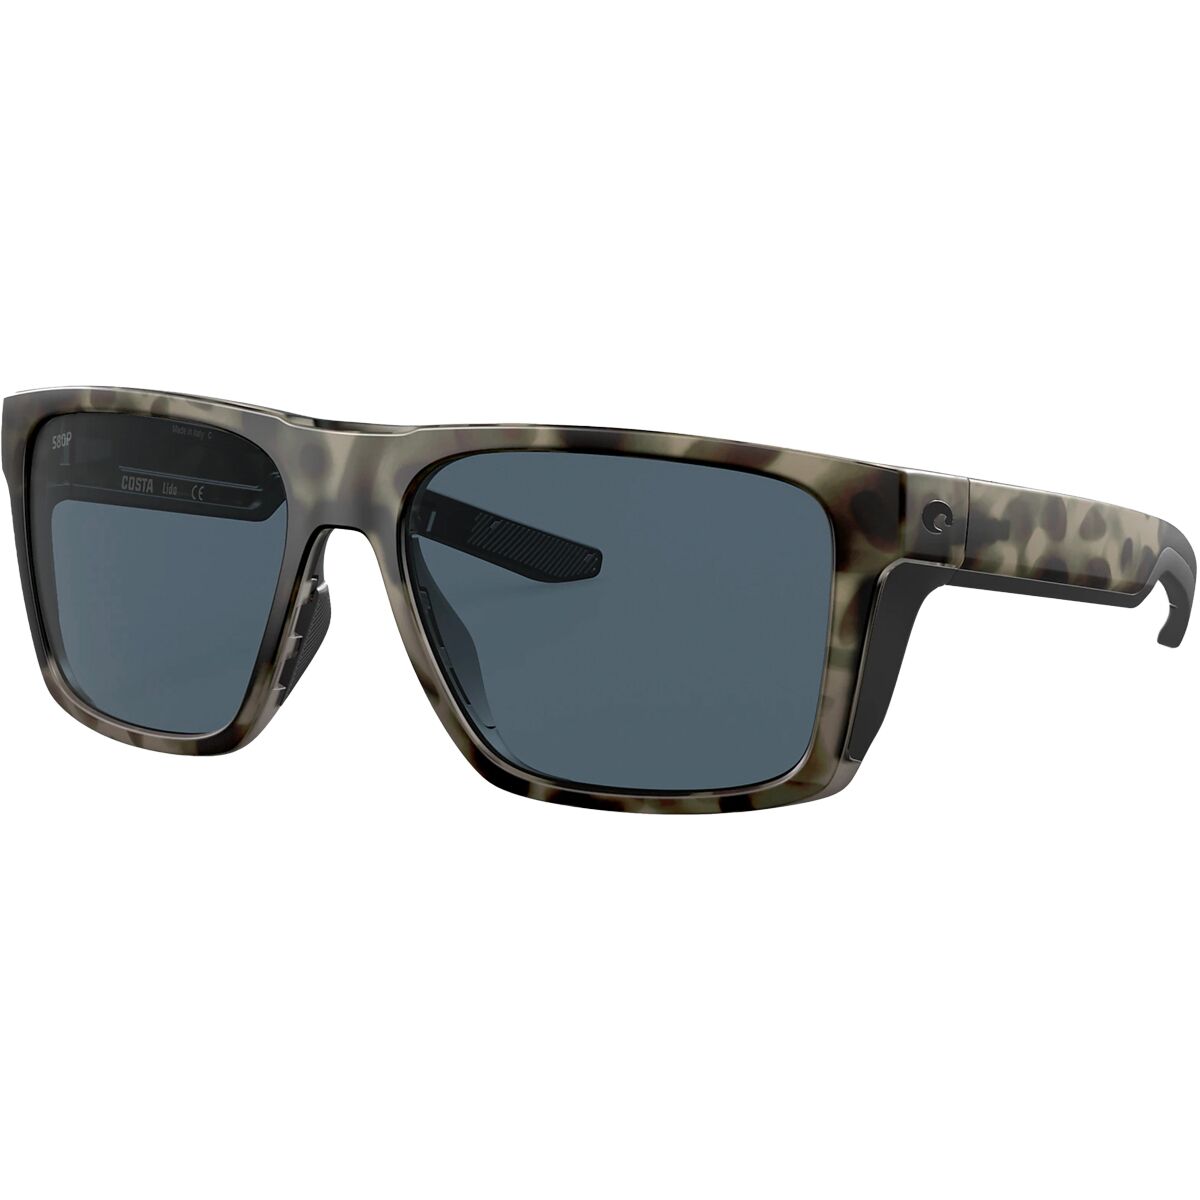 Pre-owned Costa Del Mar Costa Lido 580p Polarized Sunglasses In Wetlands Gray